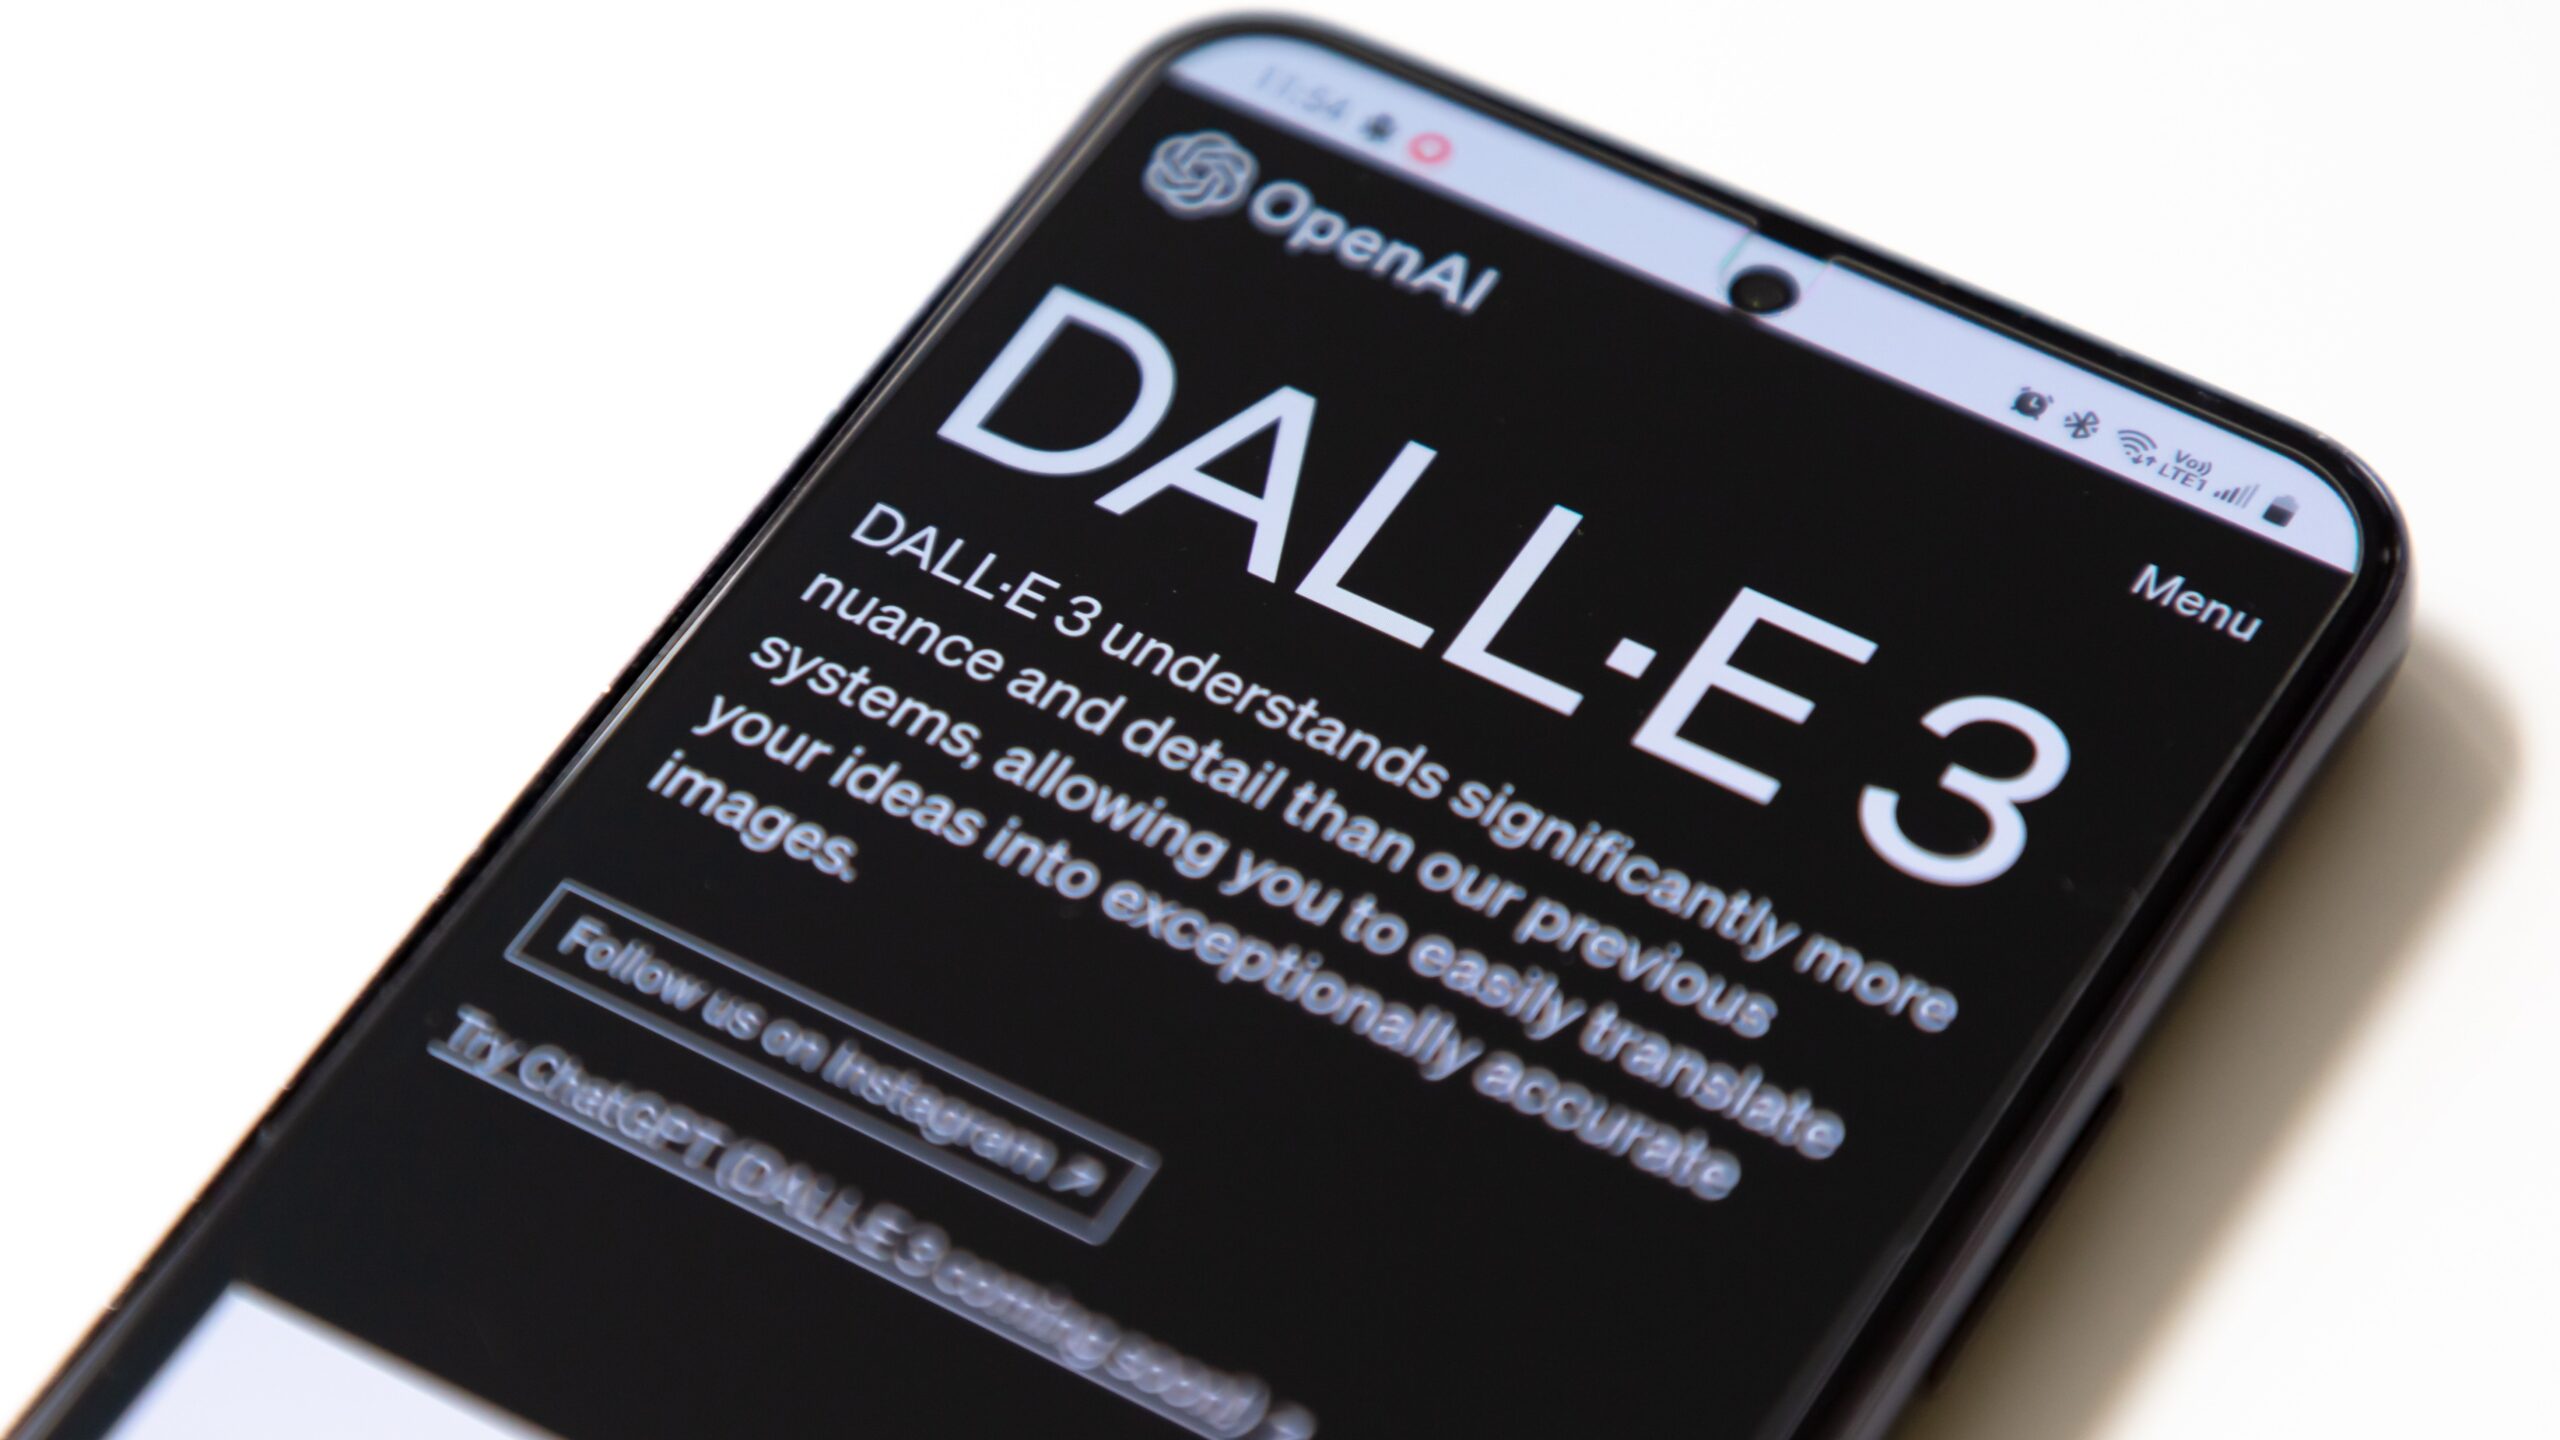 DALL-E logo on a phone